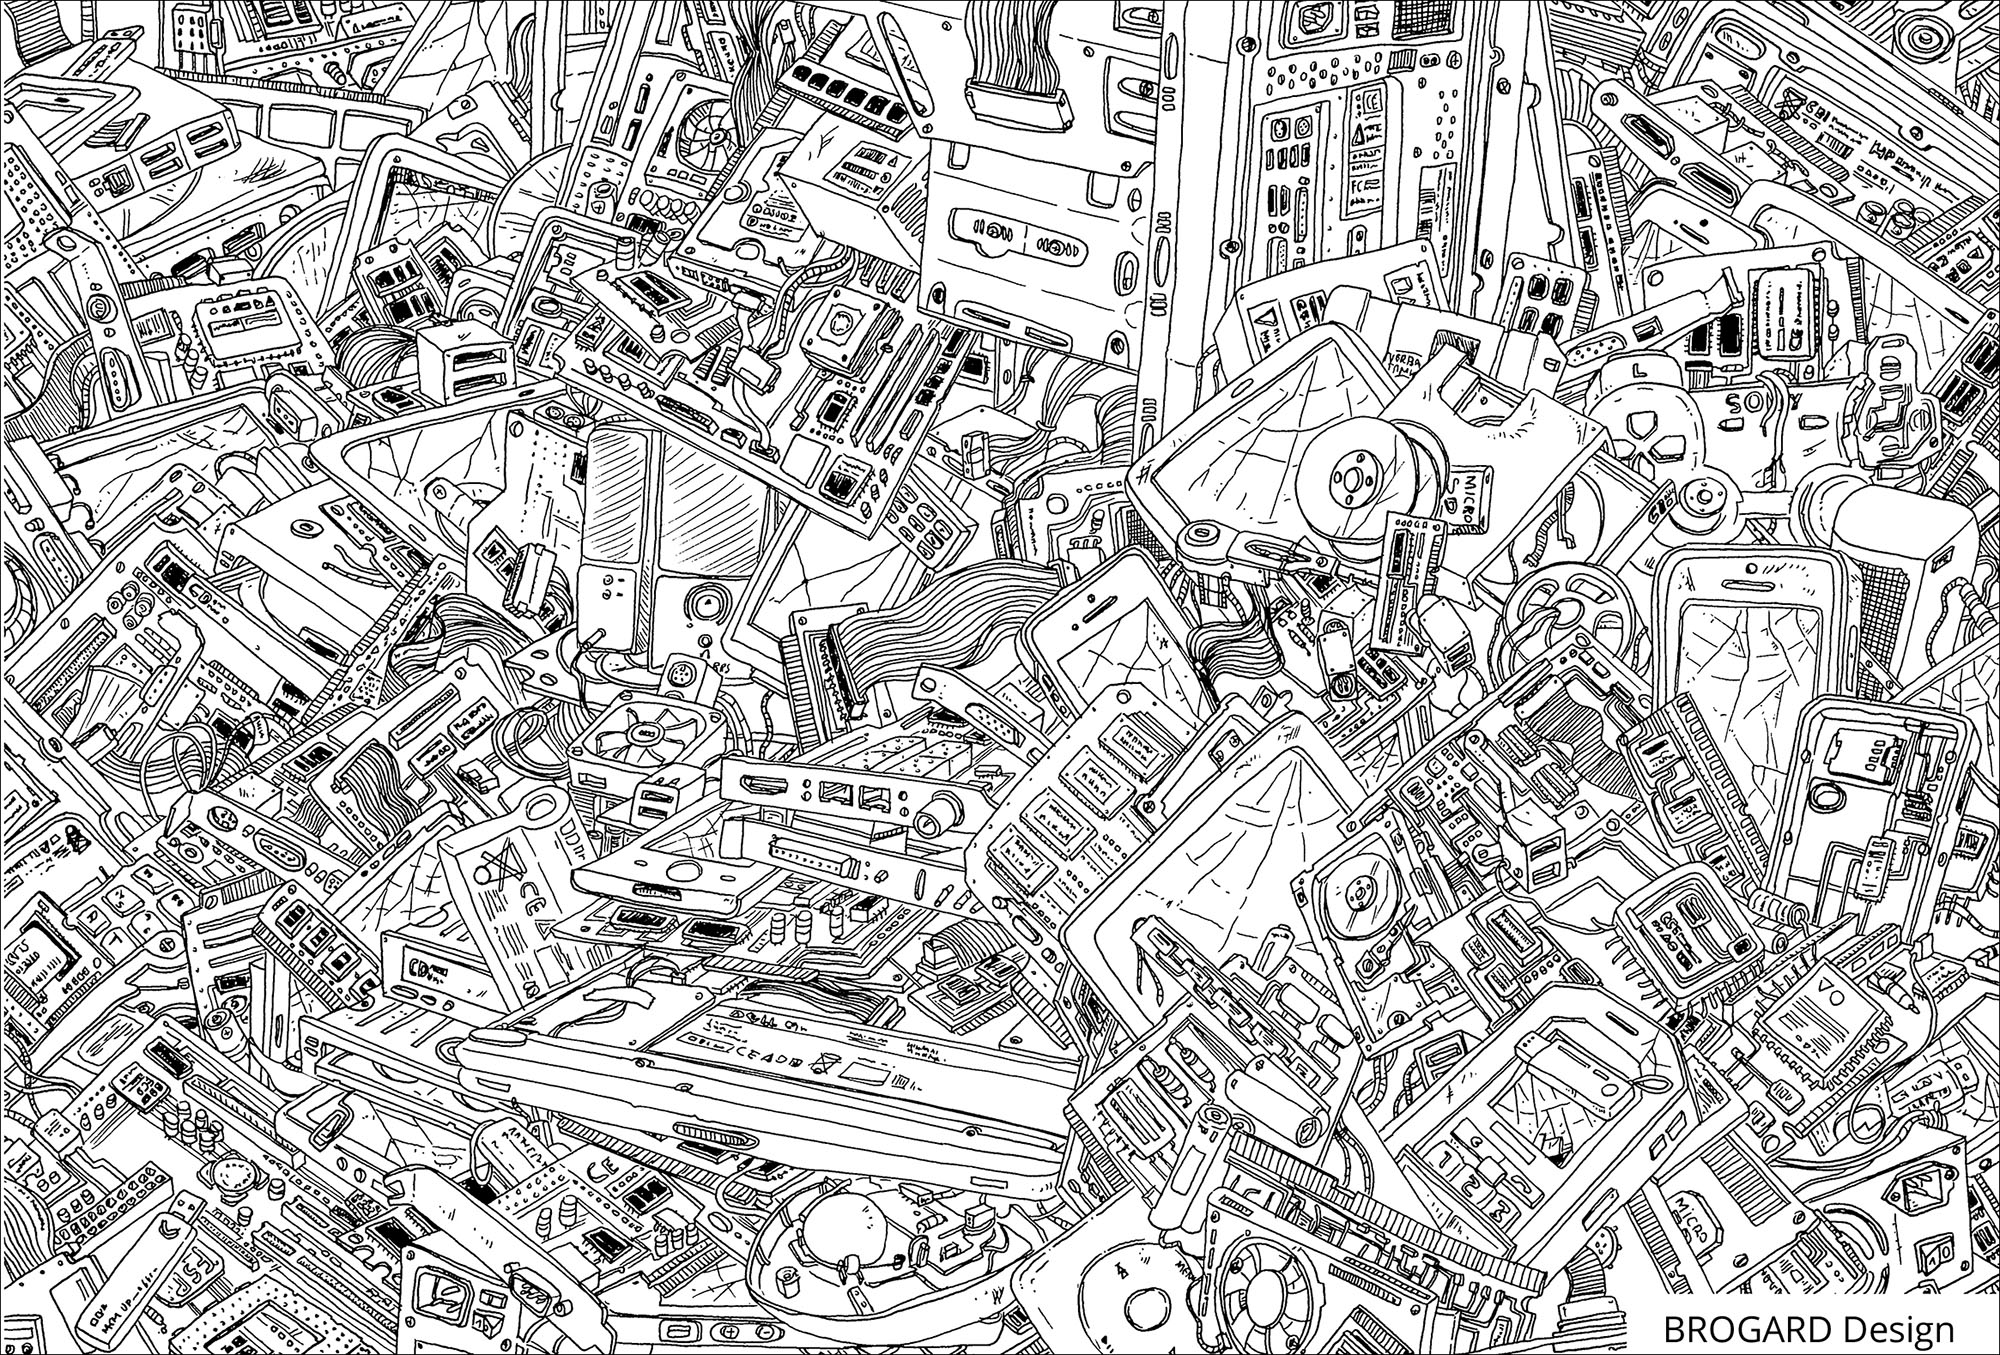 Muitos detalhes para colorir neste desenho cheio de elementos electrónicos de computadores, Artista : Frédéric Brogard